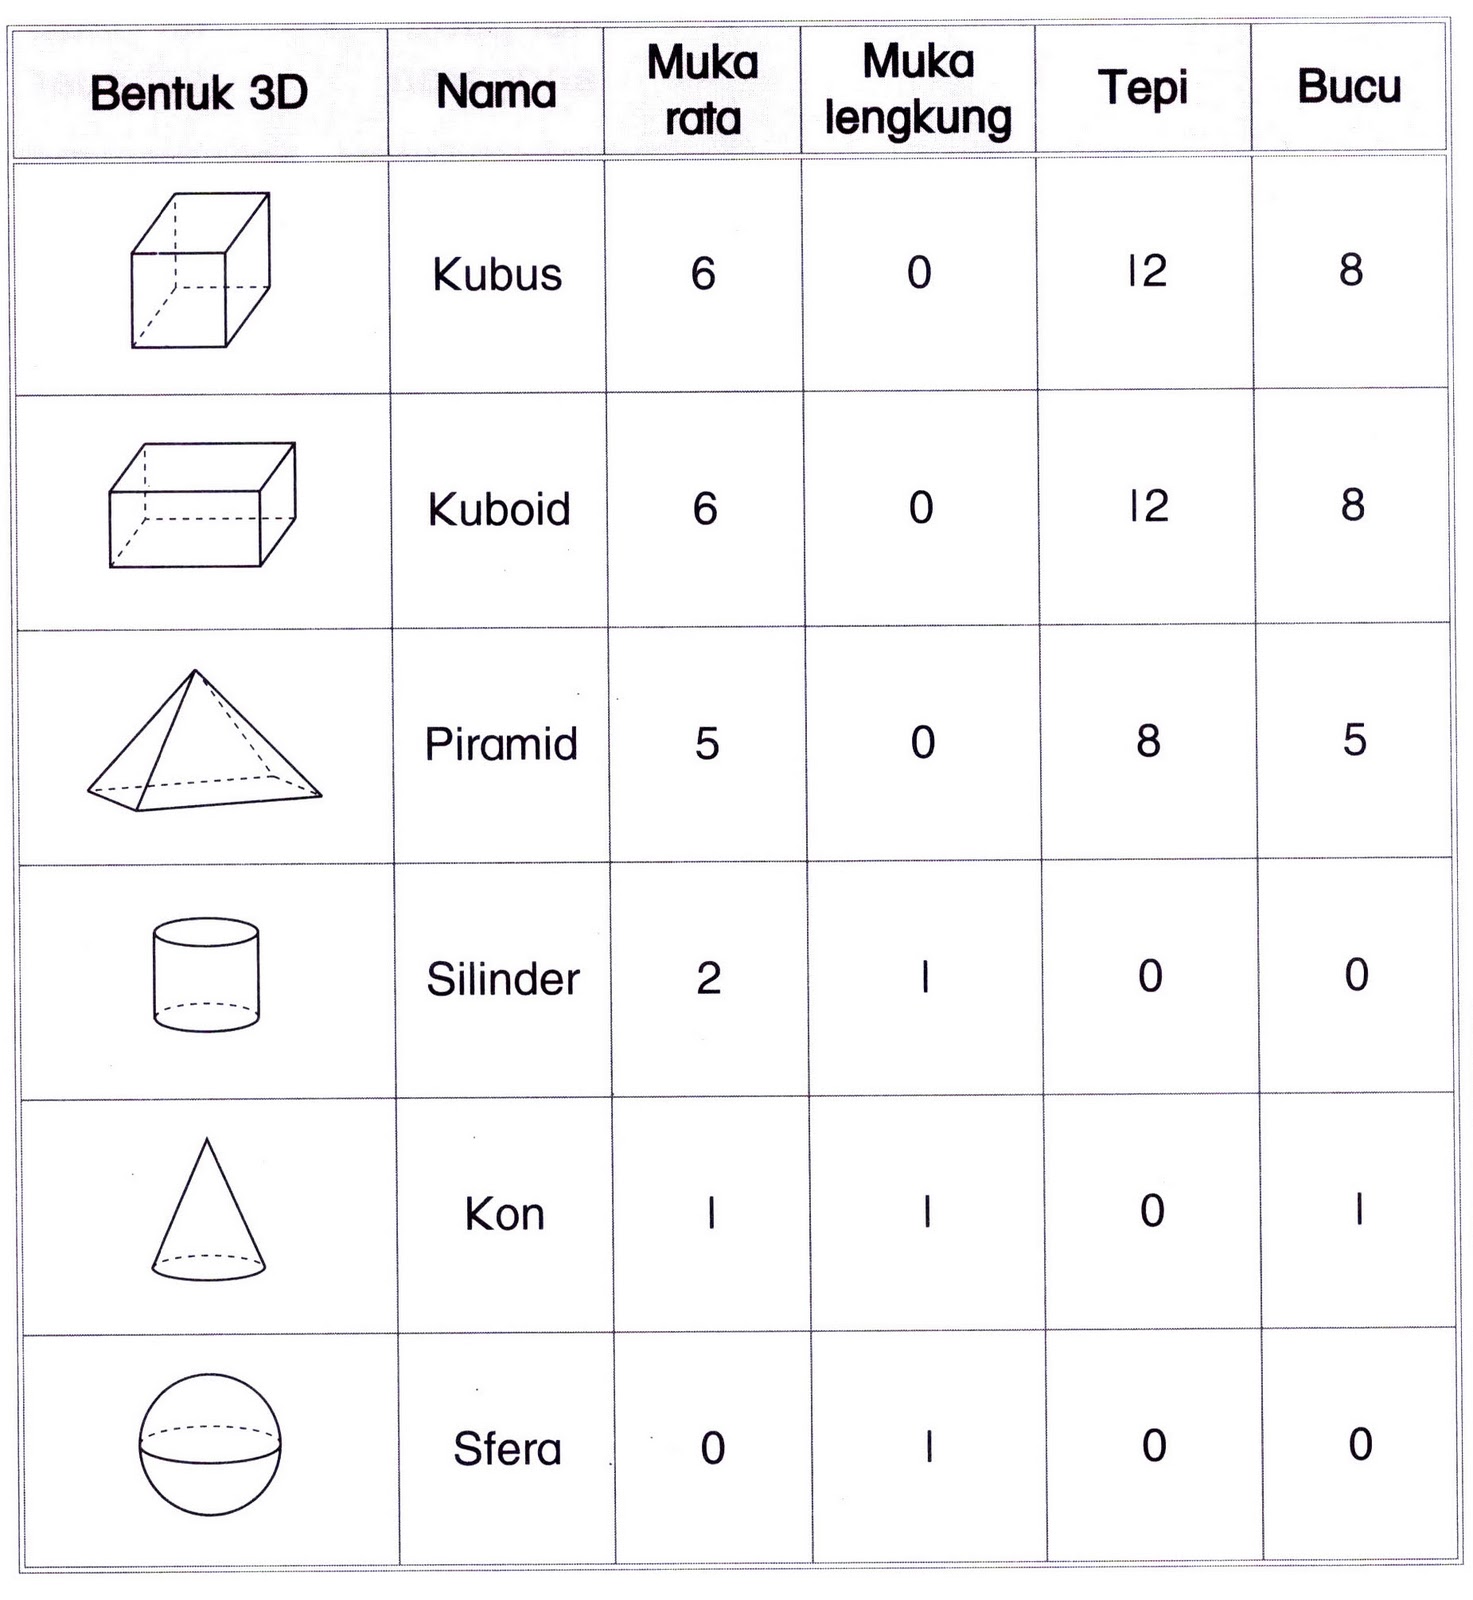 Ruang & Bentuk: Mengenali bentuk 3D